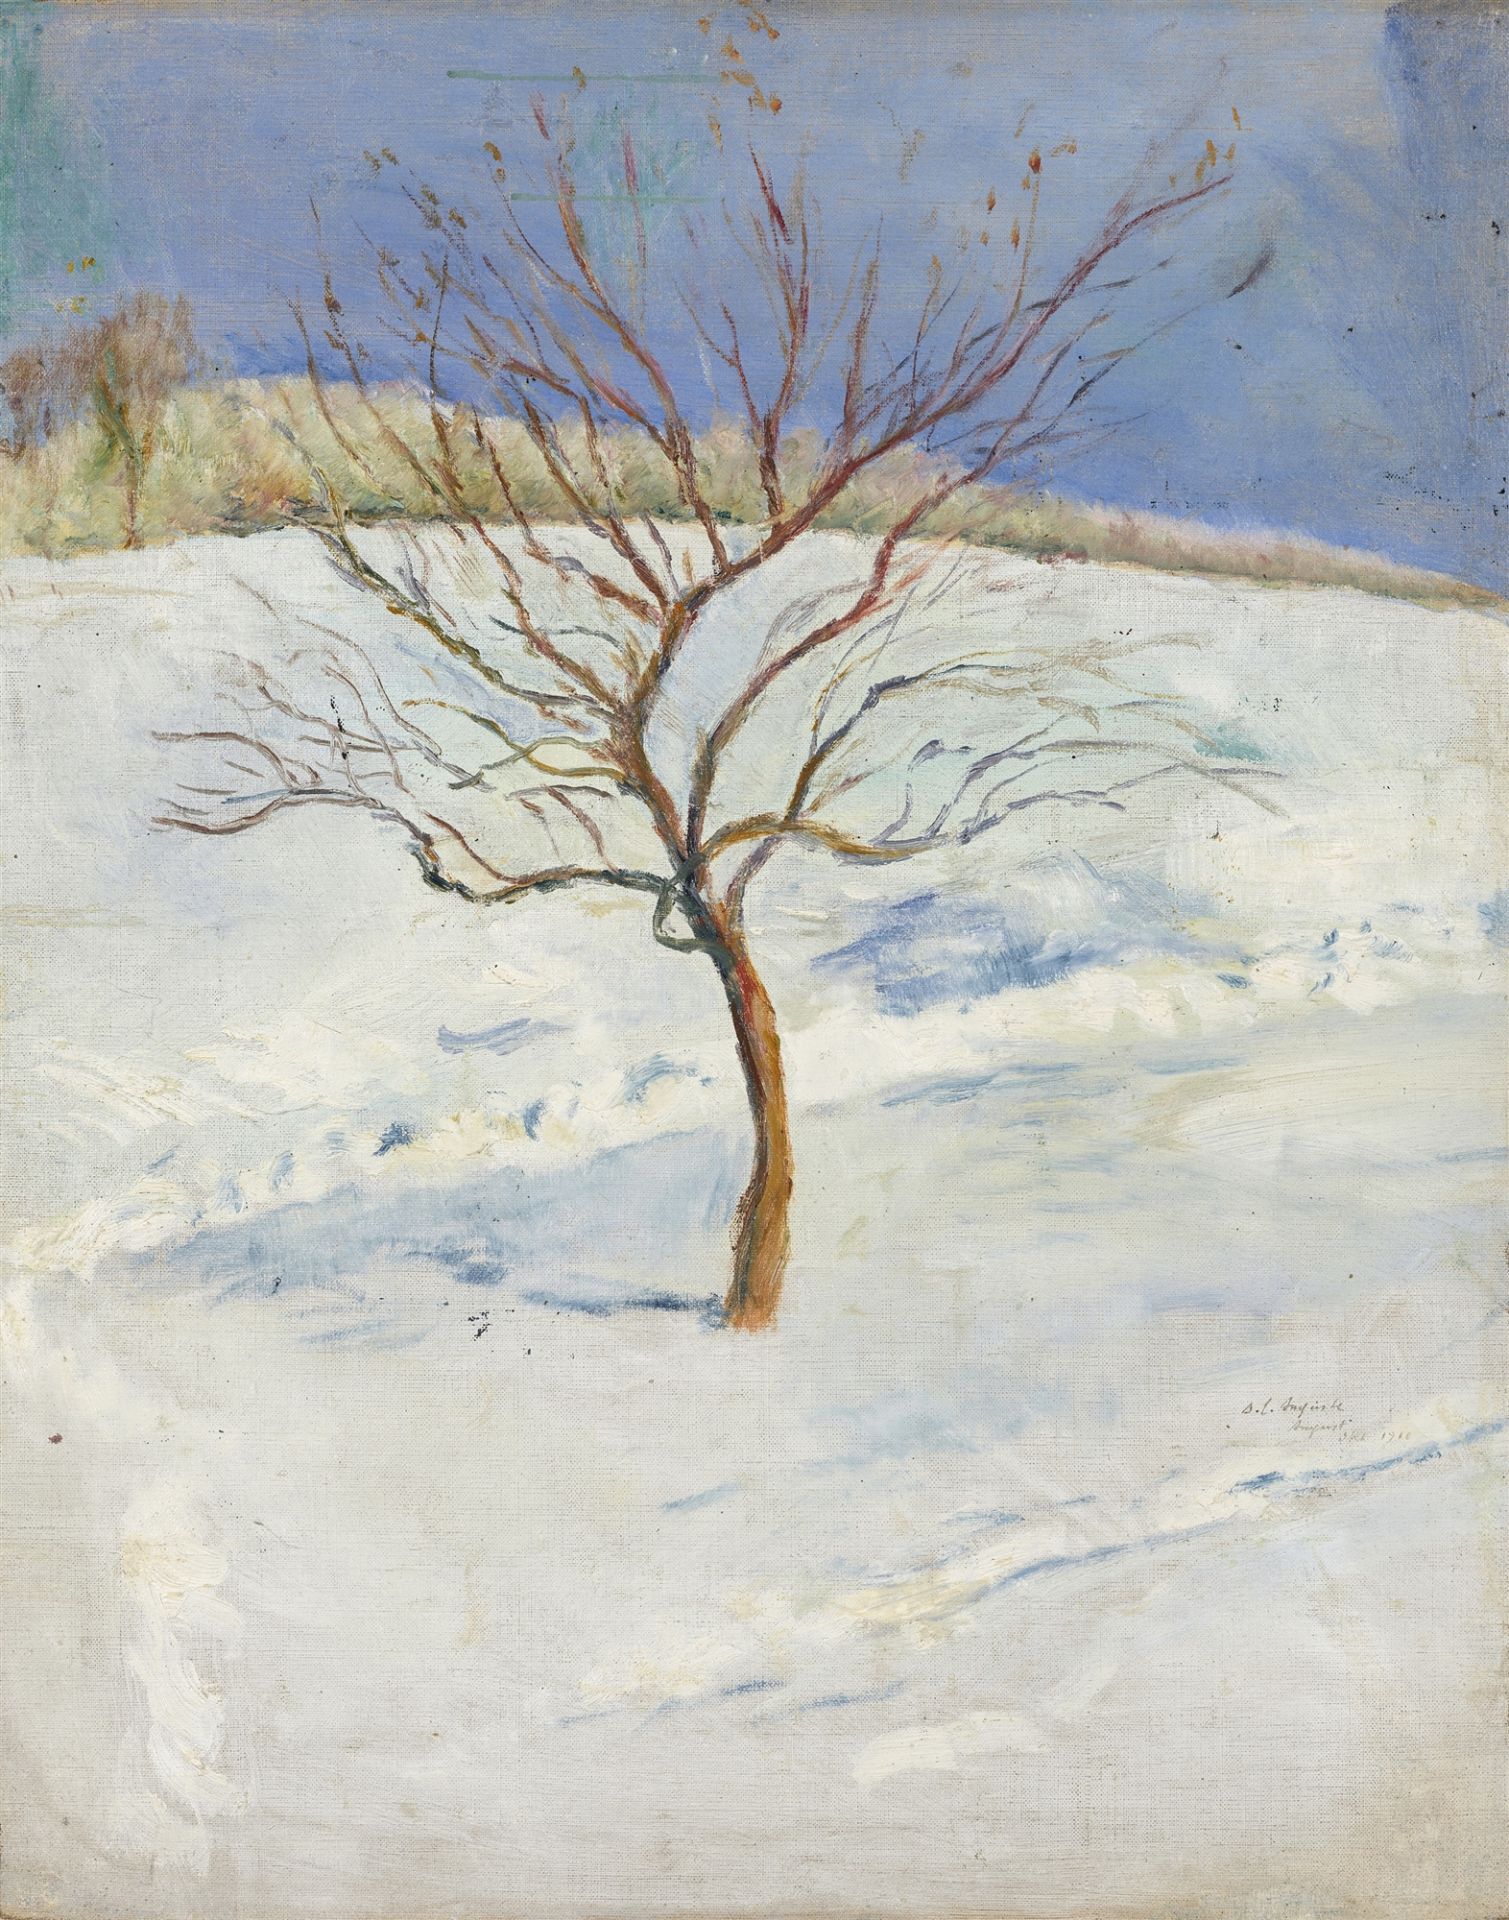 August Macke, Baum in verschneiter Landschaft